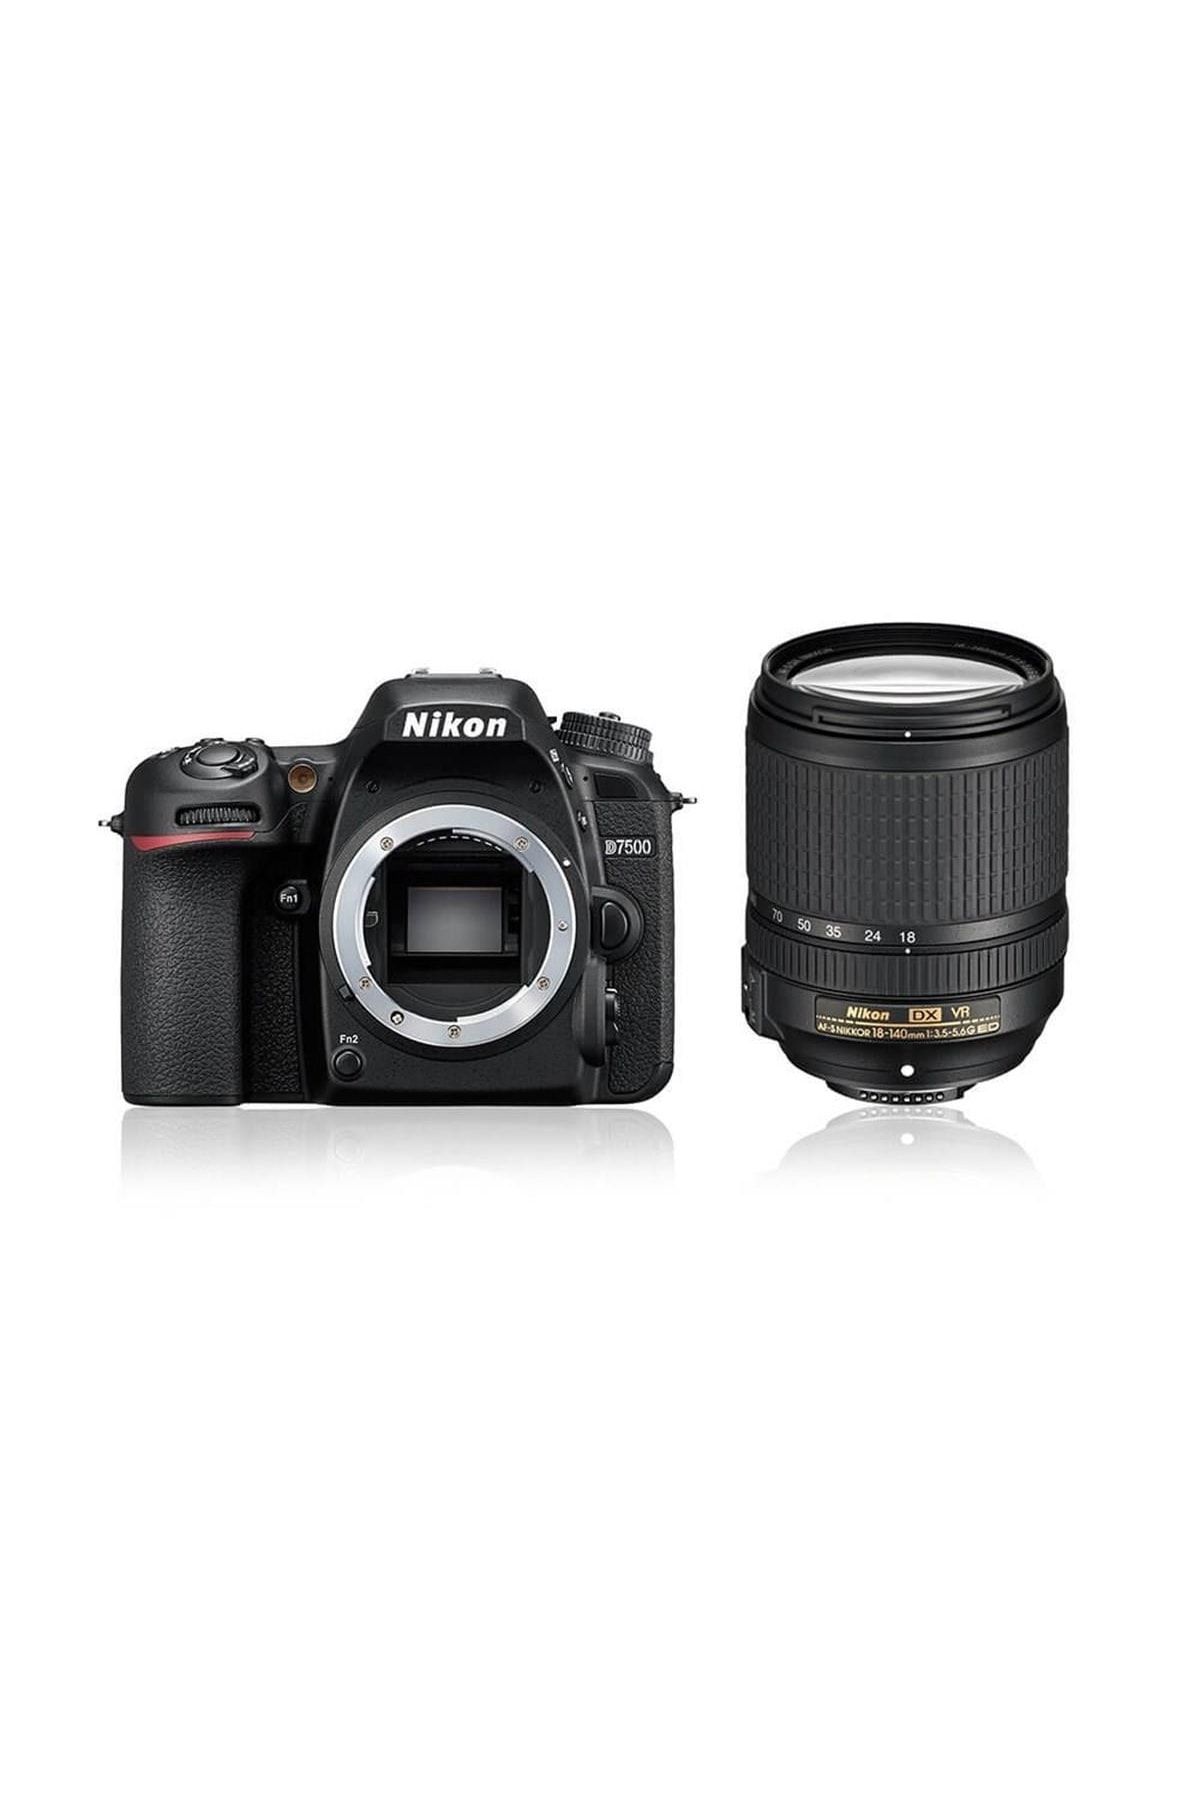 Nikon D7500 Af-s Dx Nikkor 18-140mm F/3.5-5.6g Ed Vr Lens Kit